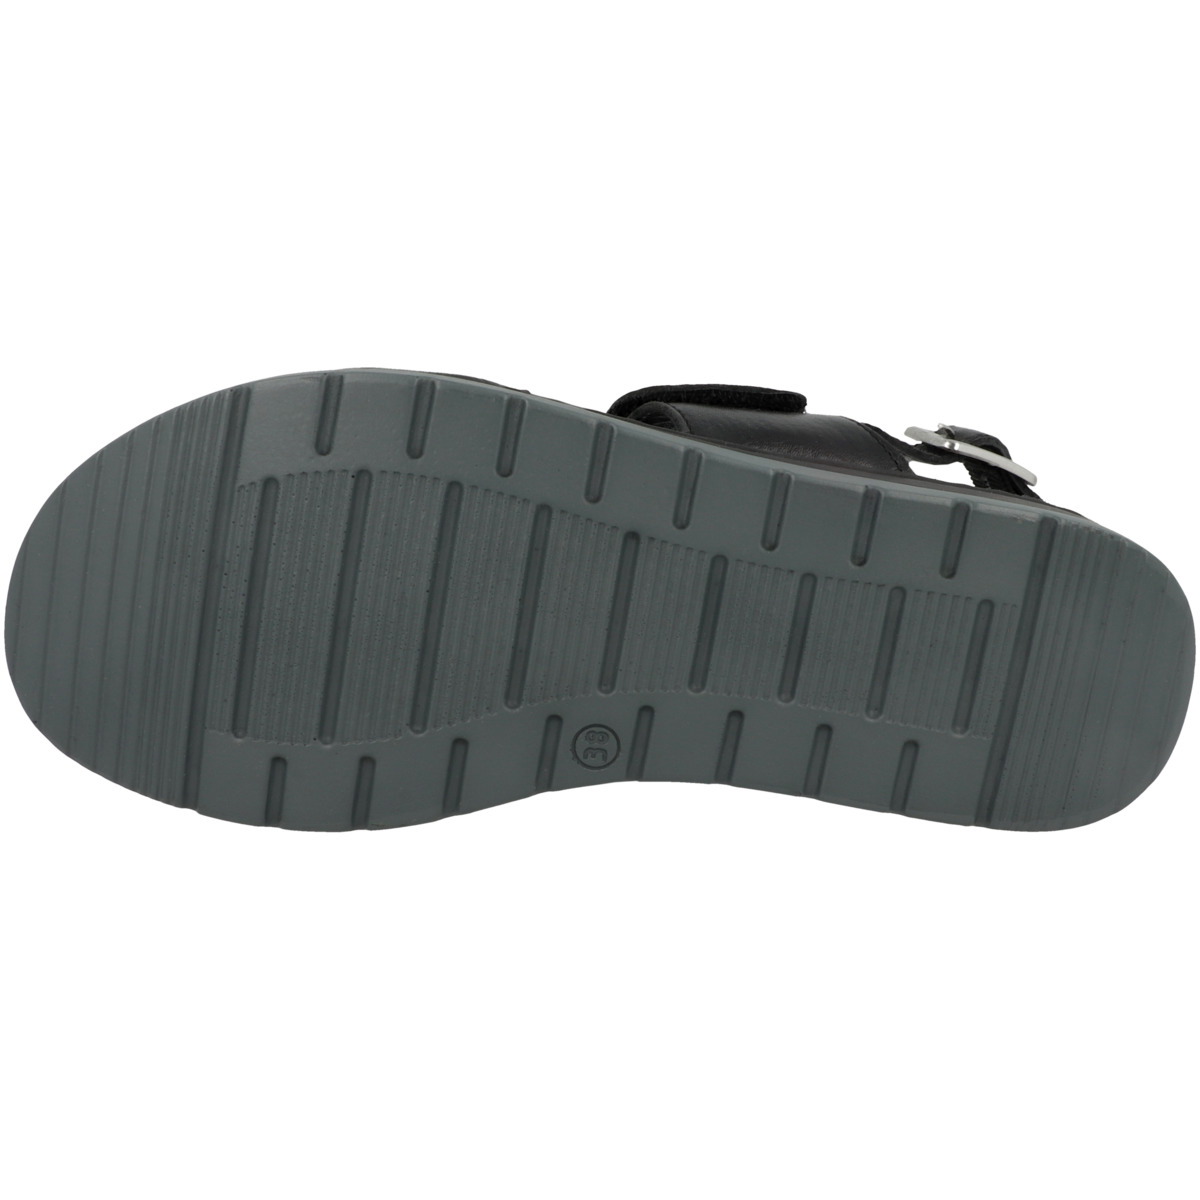 CAPRICE 9-28153-20 Sandale schwarz